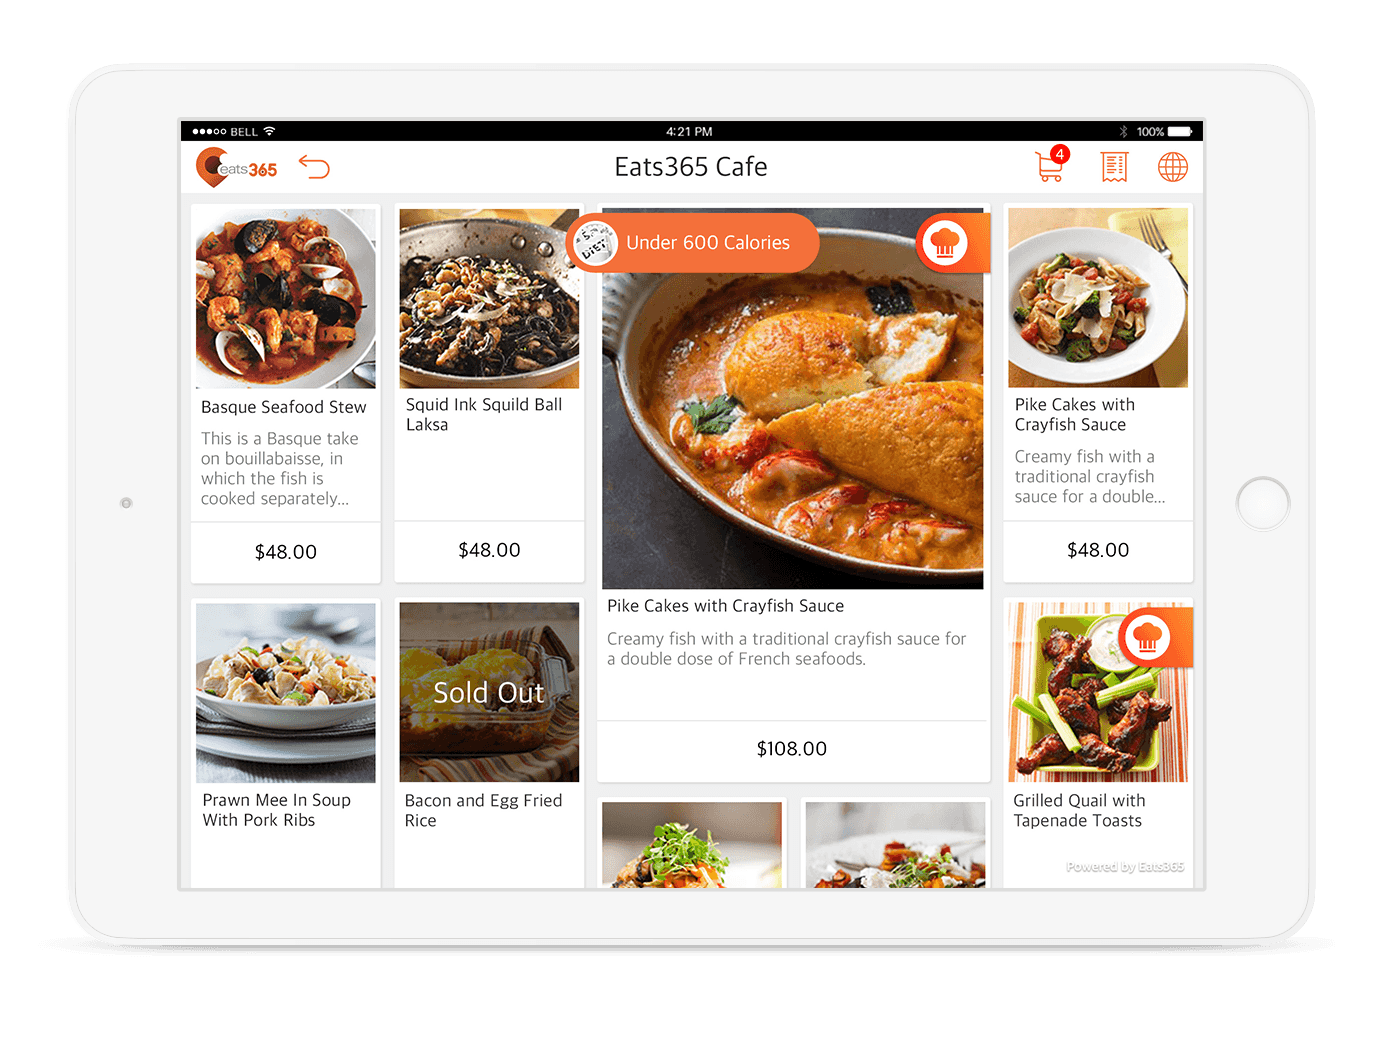 iPad POS showing food menu.